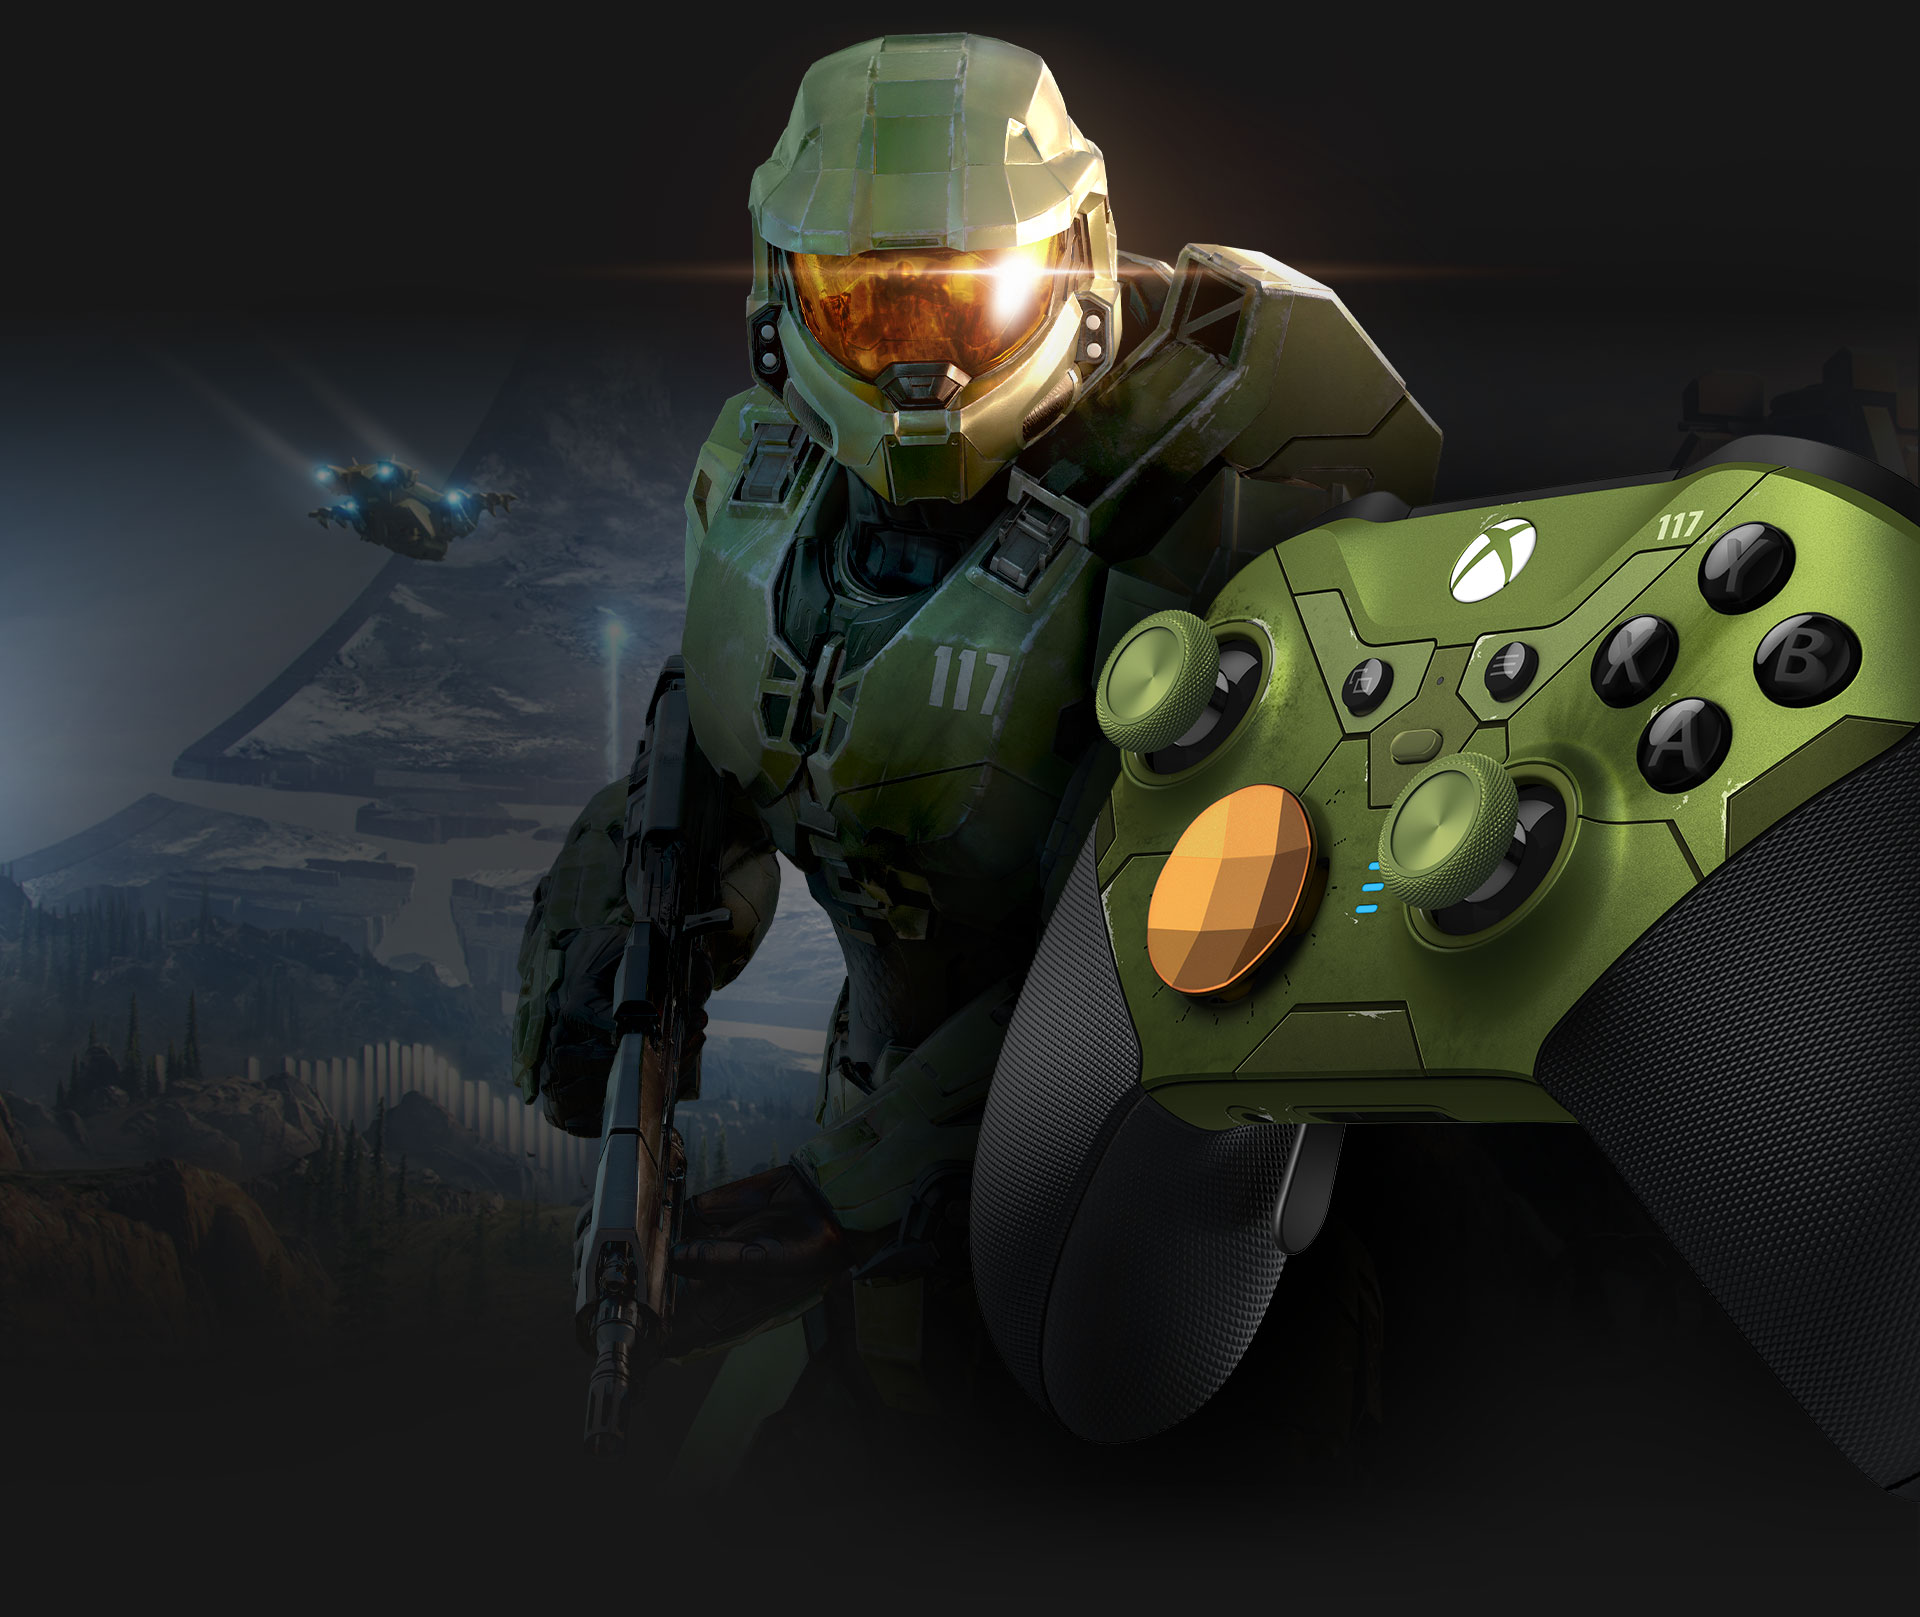 Master Chief ile Xbox Elite kablosuz oyun kumandası series 2 Halo Infinite'in soldan görünümü